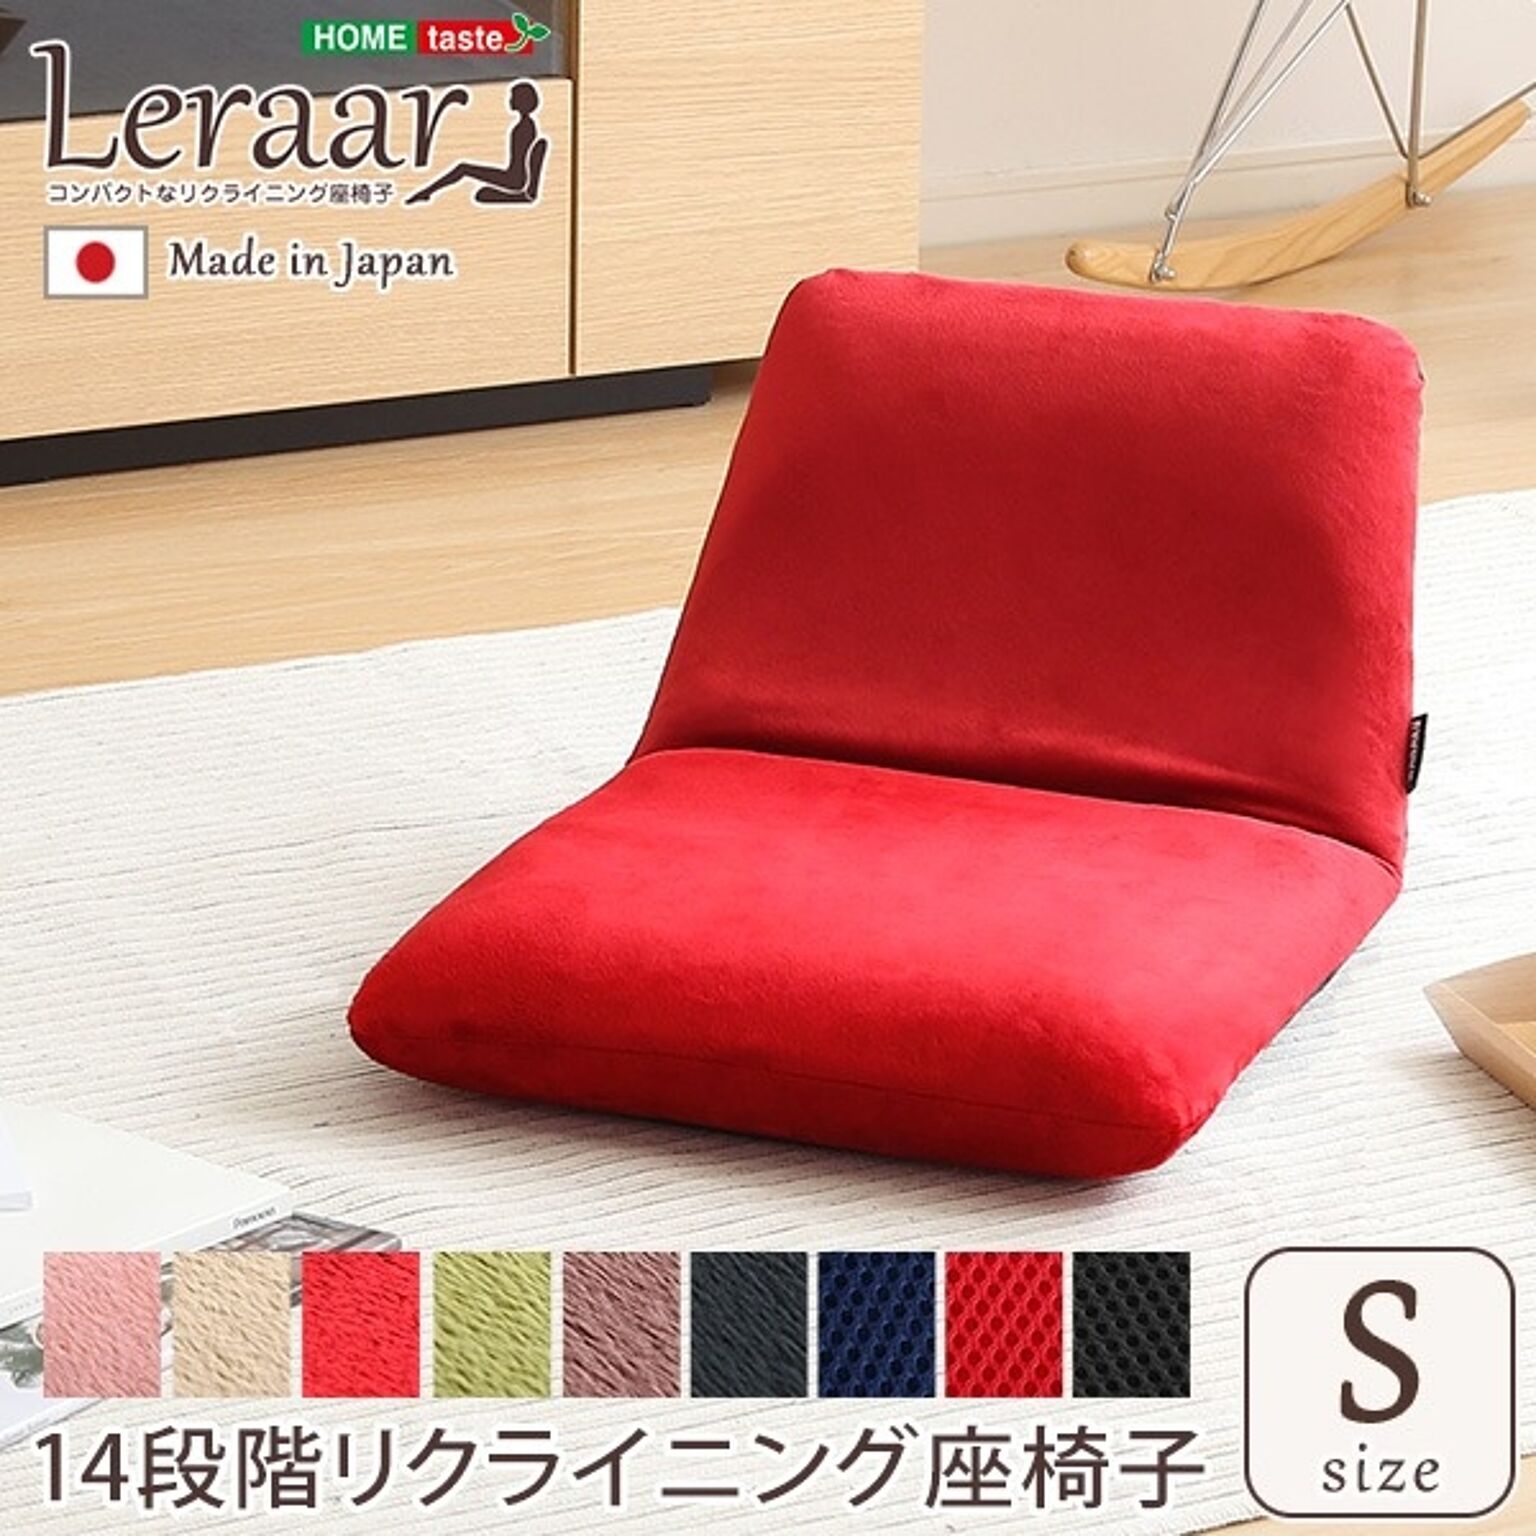 リクライニング式 座椅子/フロアチェア 【Sサイズ 起毛ブラウン】 幅約43cm スチールパイプ ウレタン 日本製【代引不可】